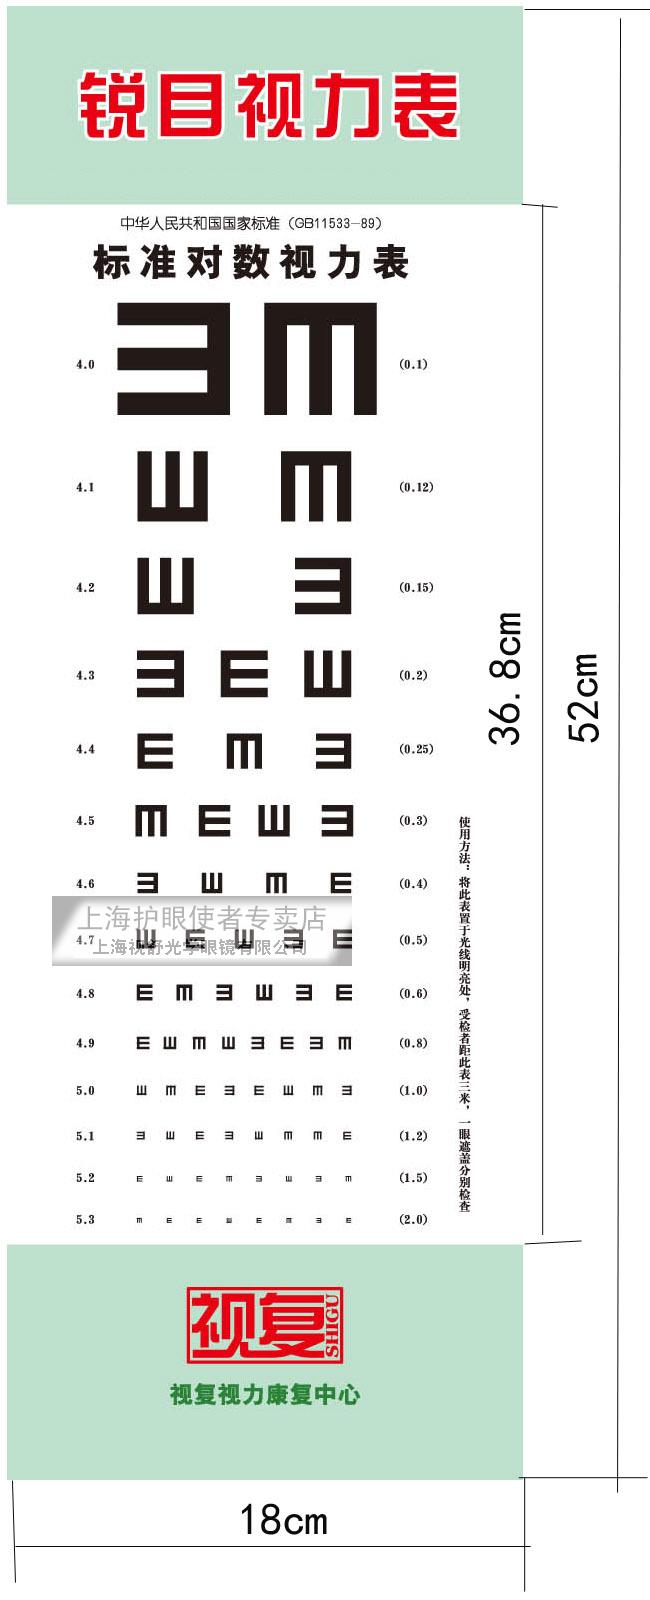 00元】新版3米家用标准对数视力表/视力检查挡眼板/儿童视力表/遮盖板